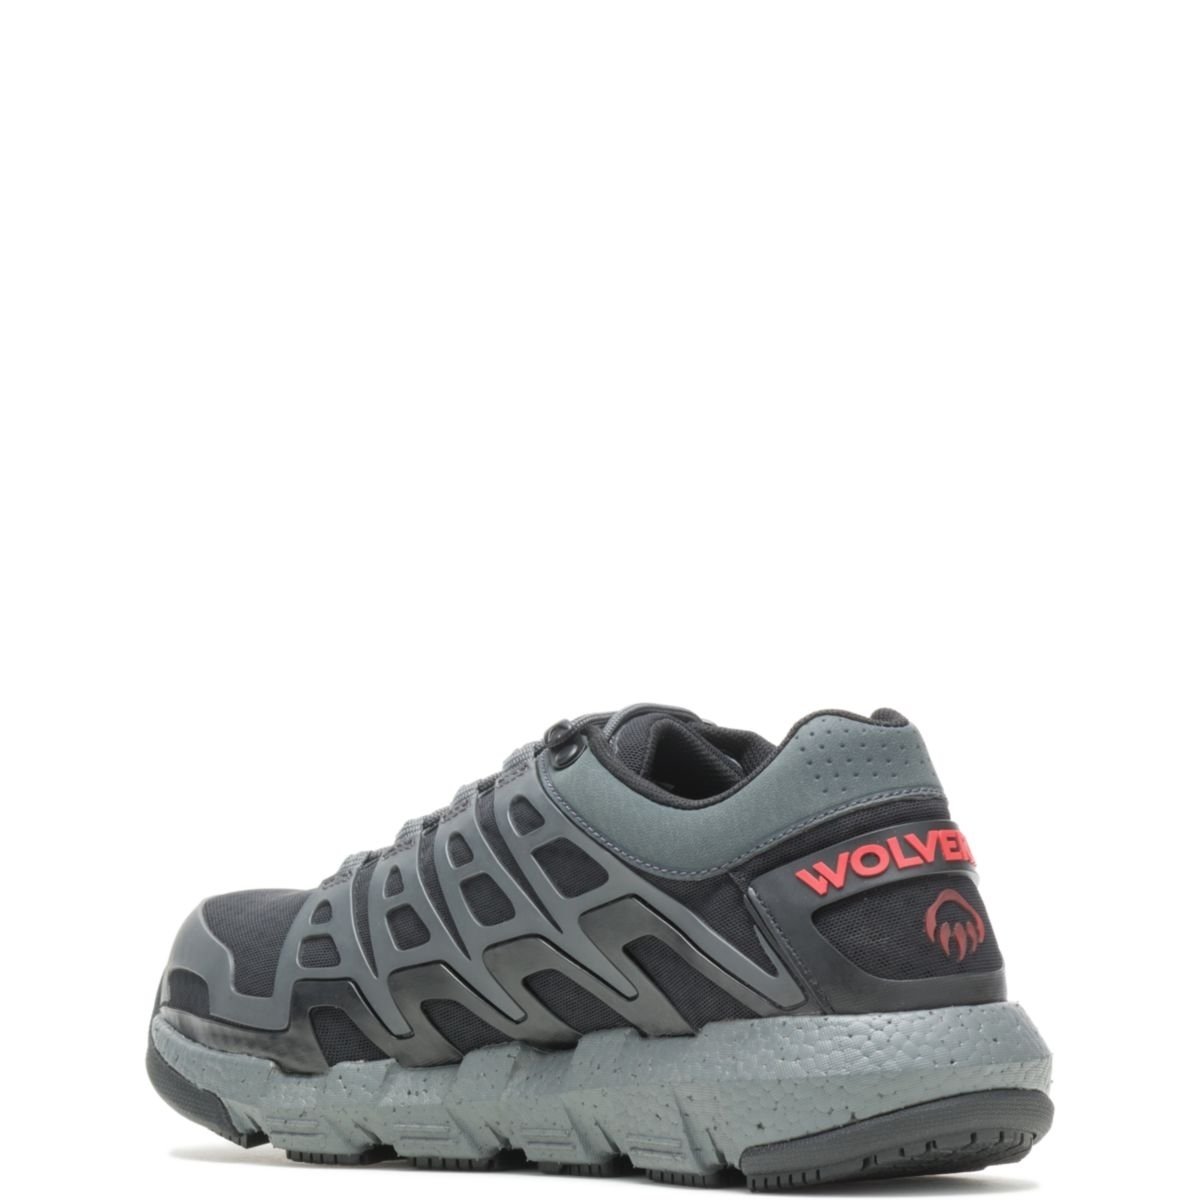 WOLVERINE Men's Rev Vent UltraSpringâ¢ DuraShocksÂ® CarbonMAXÂ® Composite Toe Work Shoe Charcoal - W211016 CHARCOAL - CHARCOAL, 10.5